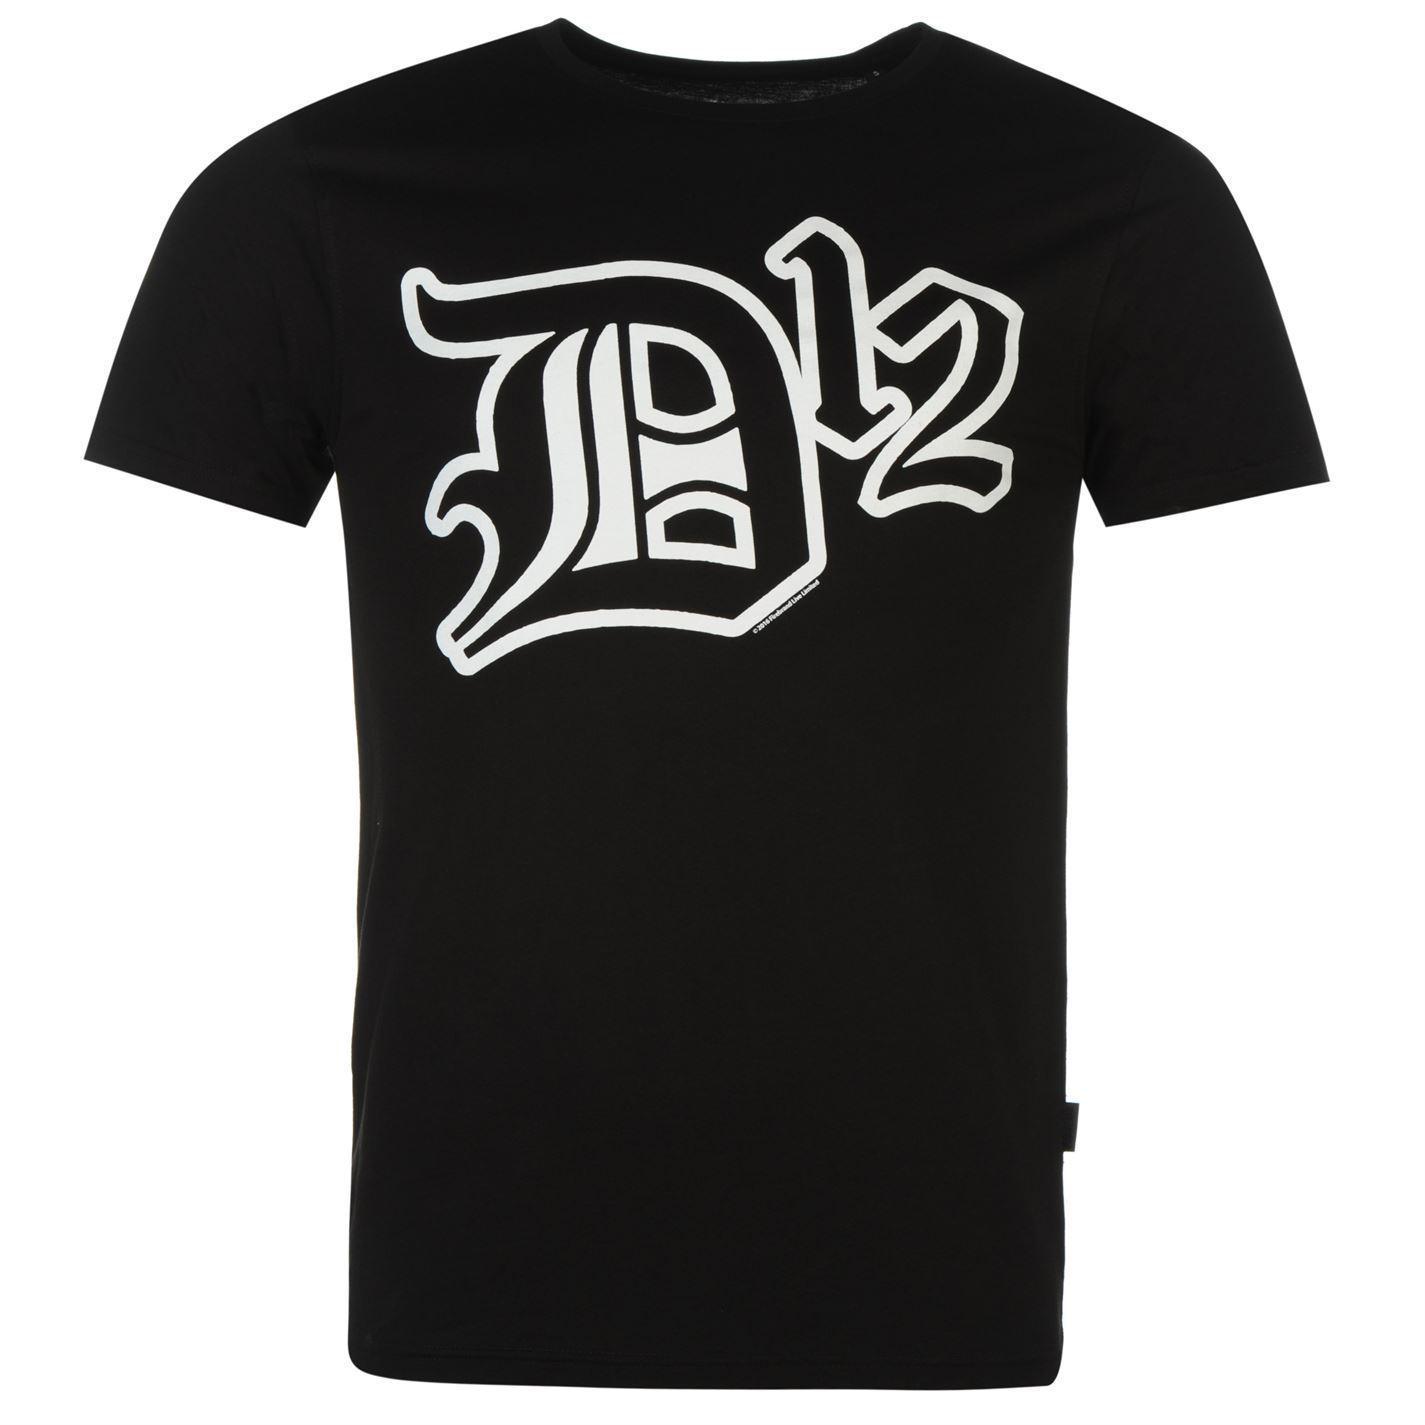 D12 Logo - LogoDix